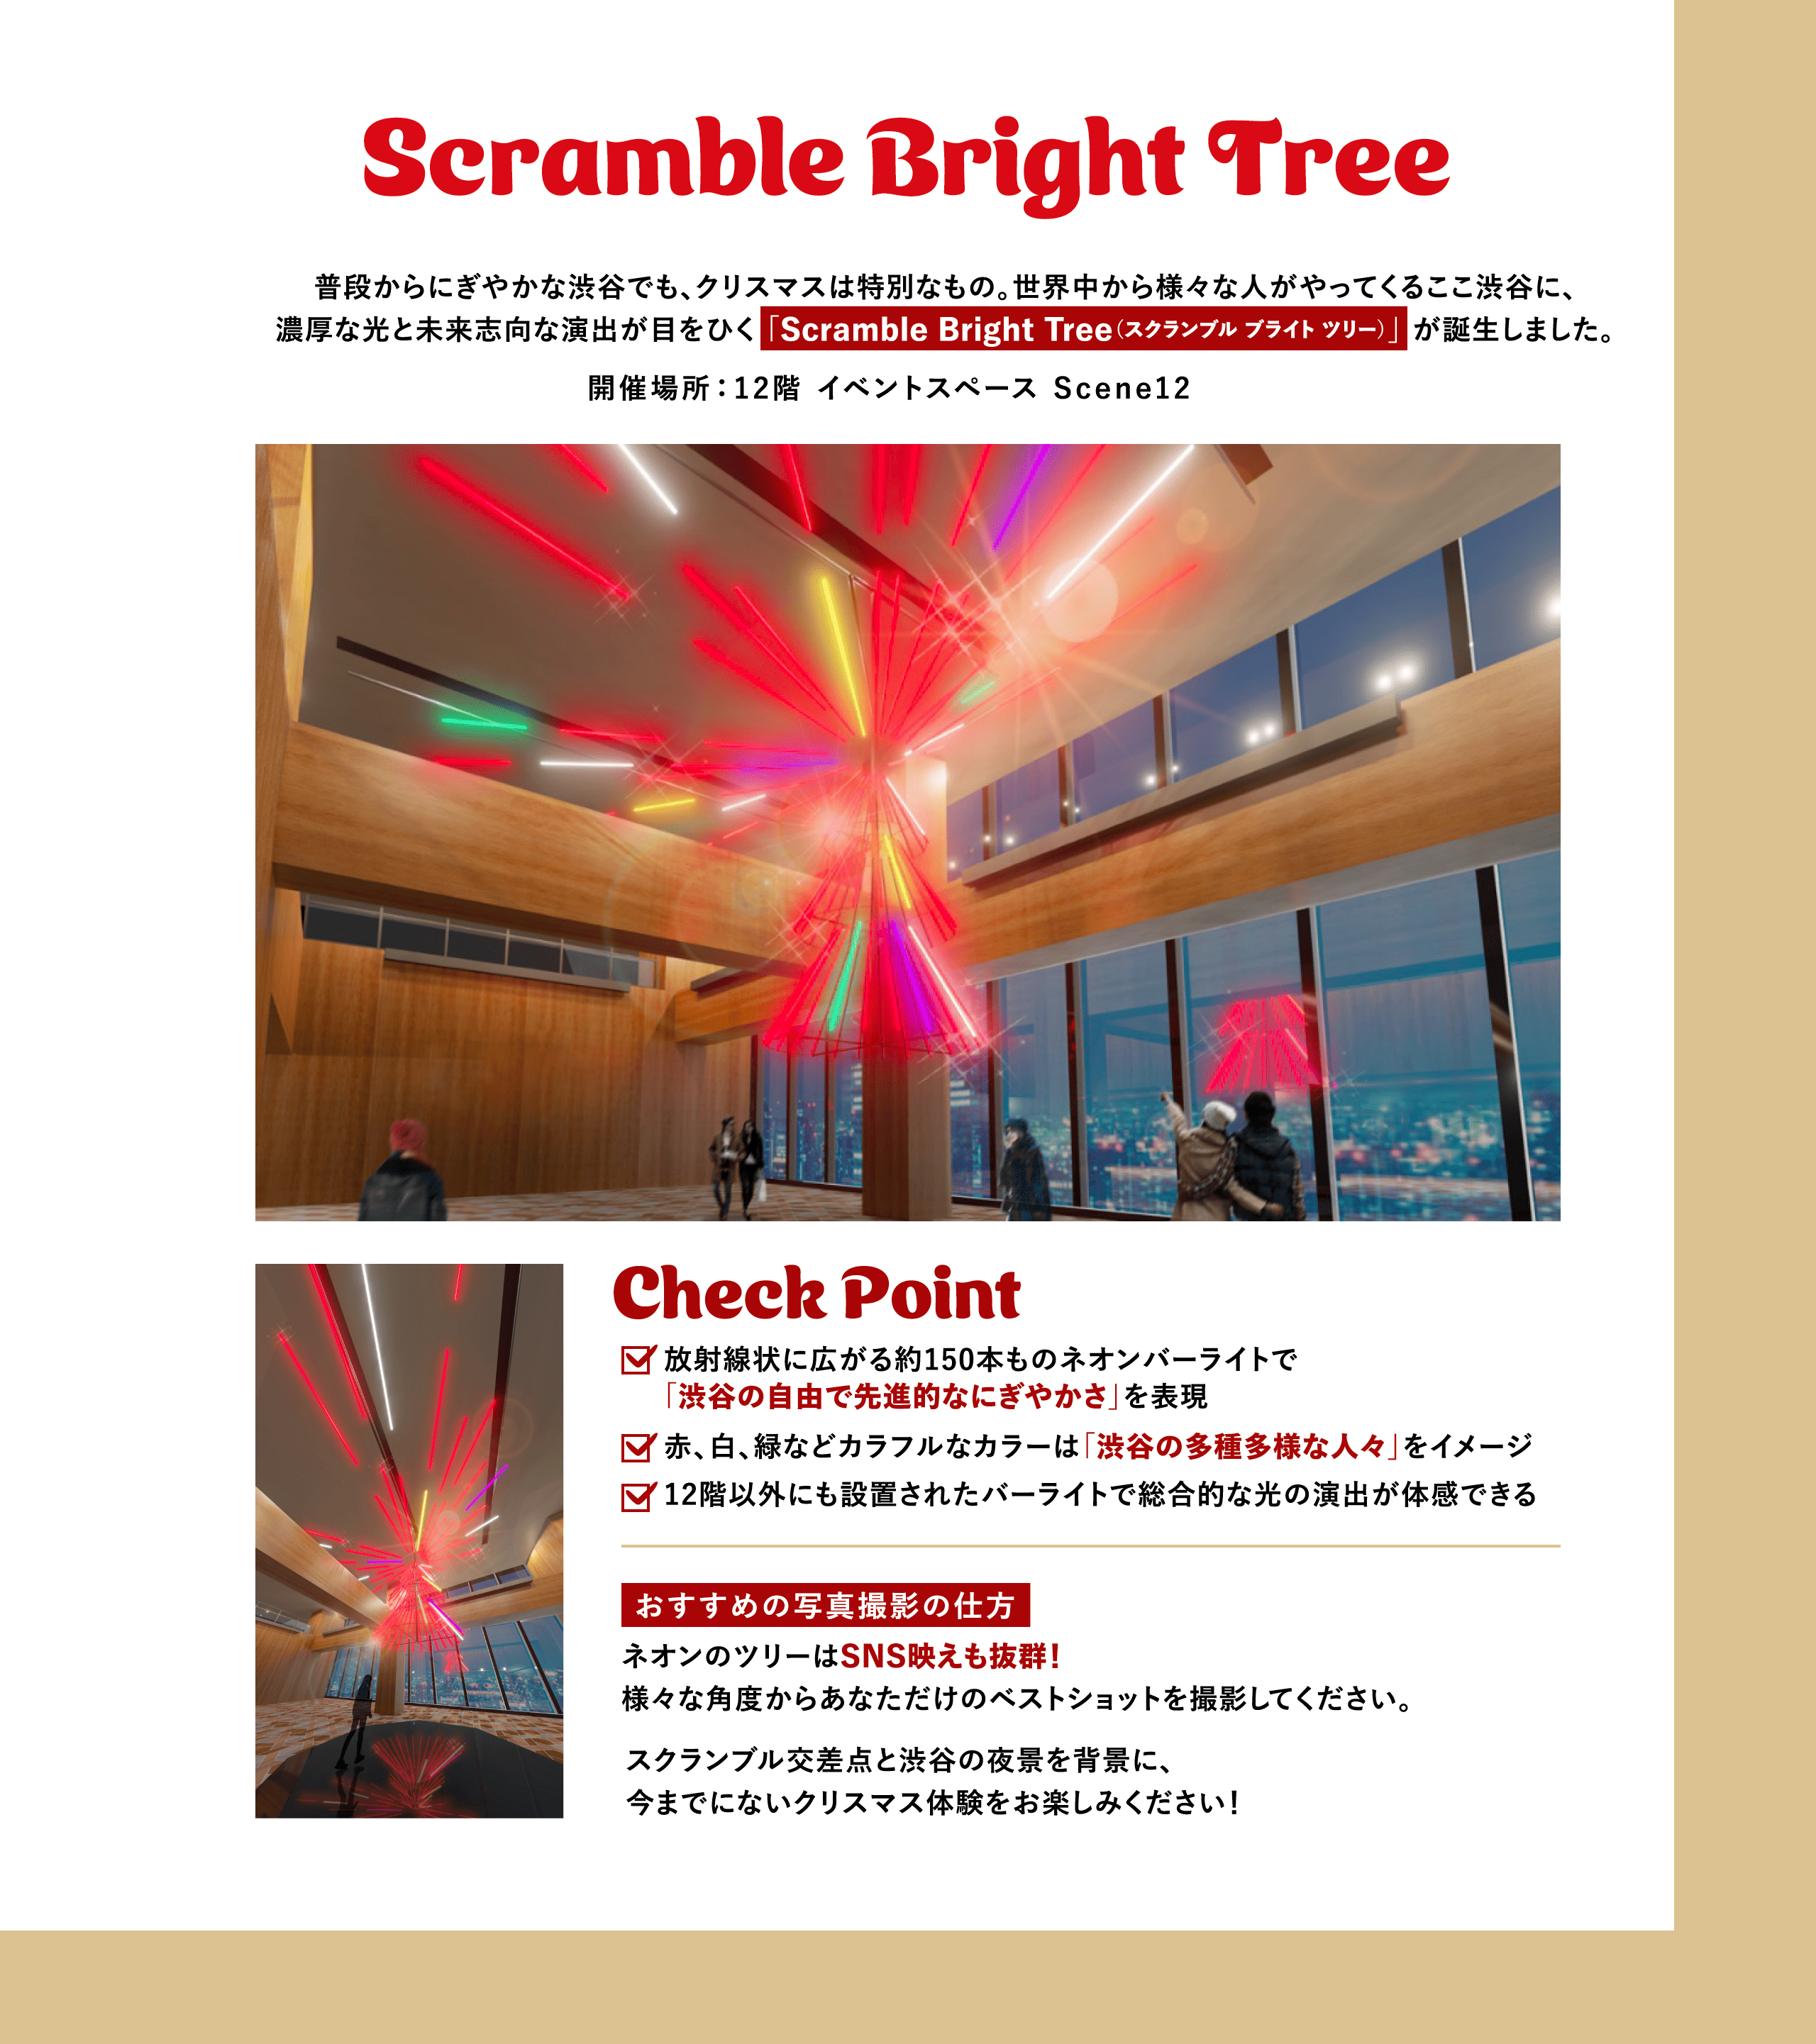 Scramble Bright Tree 普段からにぎやかな渋谷でも、クリスマスは特別なもの。世界中から様々な人がやってくるここ渋谷に、濃厚な光と未来志向な演出が目をひく 「Scramble Bright Tree（スクランブル ブライト ツリー）」 が誕生しました。開催場所：12階 イベントスペース Scene12 Check Point 放射線状に広がる約150本ものネオンバーライトで「渋谷の自由で先進的なにぎやかさ」を表現 赤、白、緑などカラフルなカラーは「渋谷の多種多様な人々」をイメージ 12階以外にも設置されたバーライトで総合的な光の演出が体感できる おすすめの写真撮影の仕方 ネオンのツリーはSNS映えも抜群！様々な角度からあなただけのベストショットを撮影してください。 スクランブル交差点と渋谷の夜景を背景に、今までにないクリスマス体験をお楽しみください！